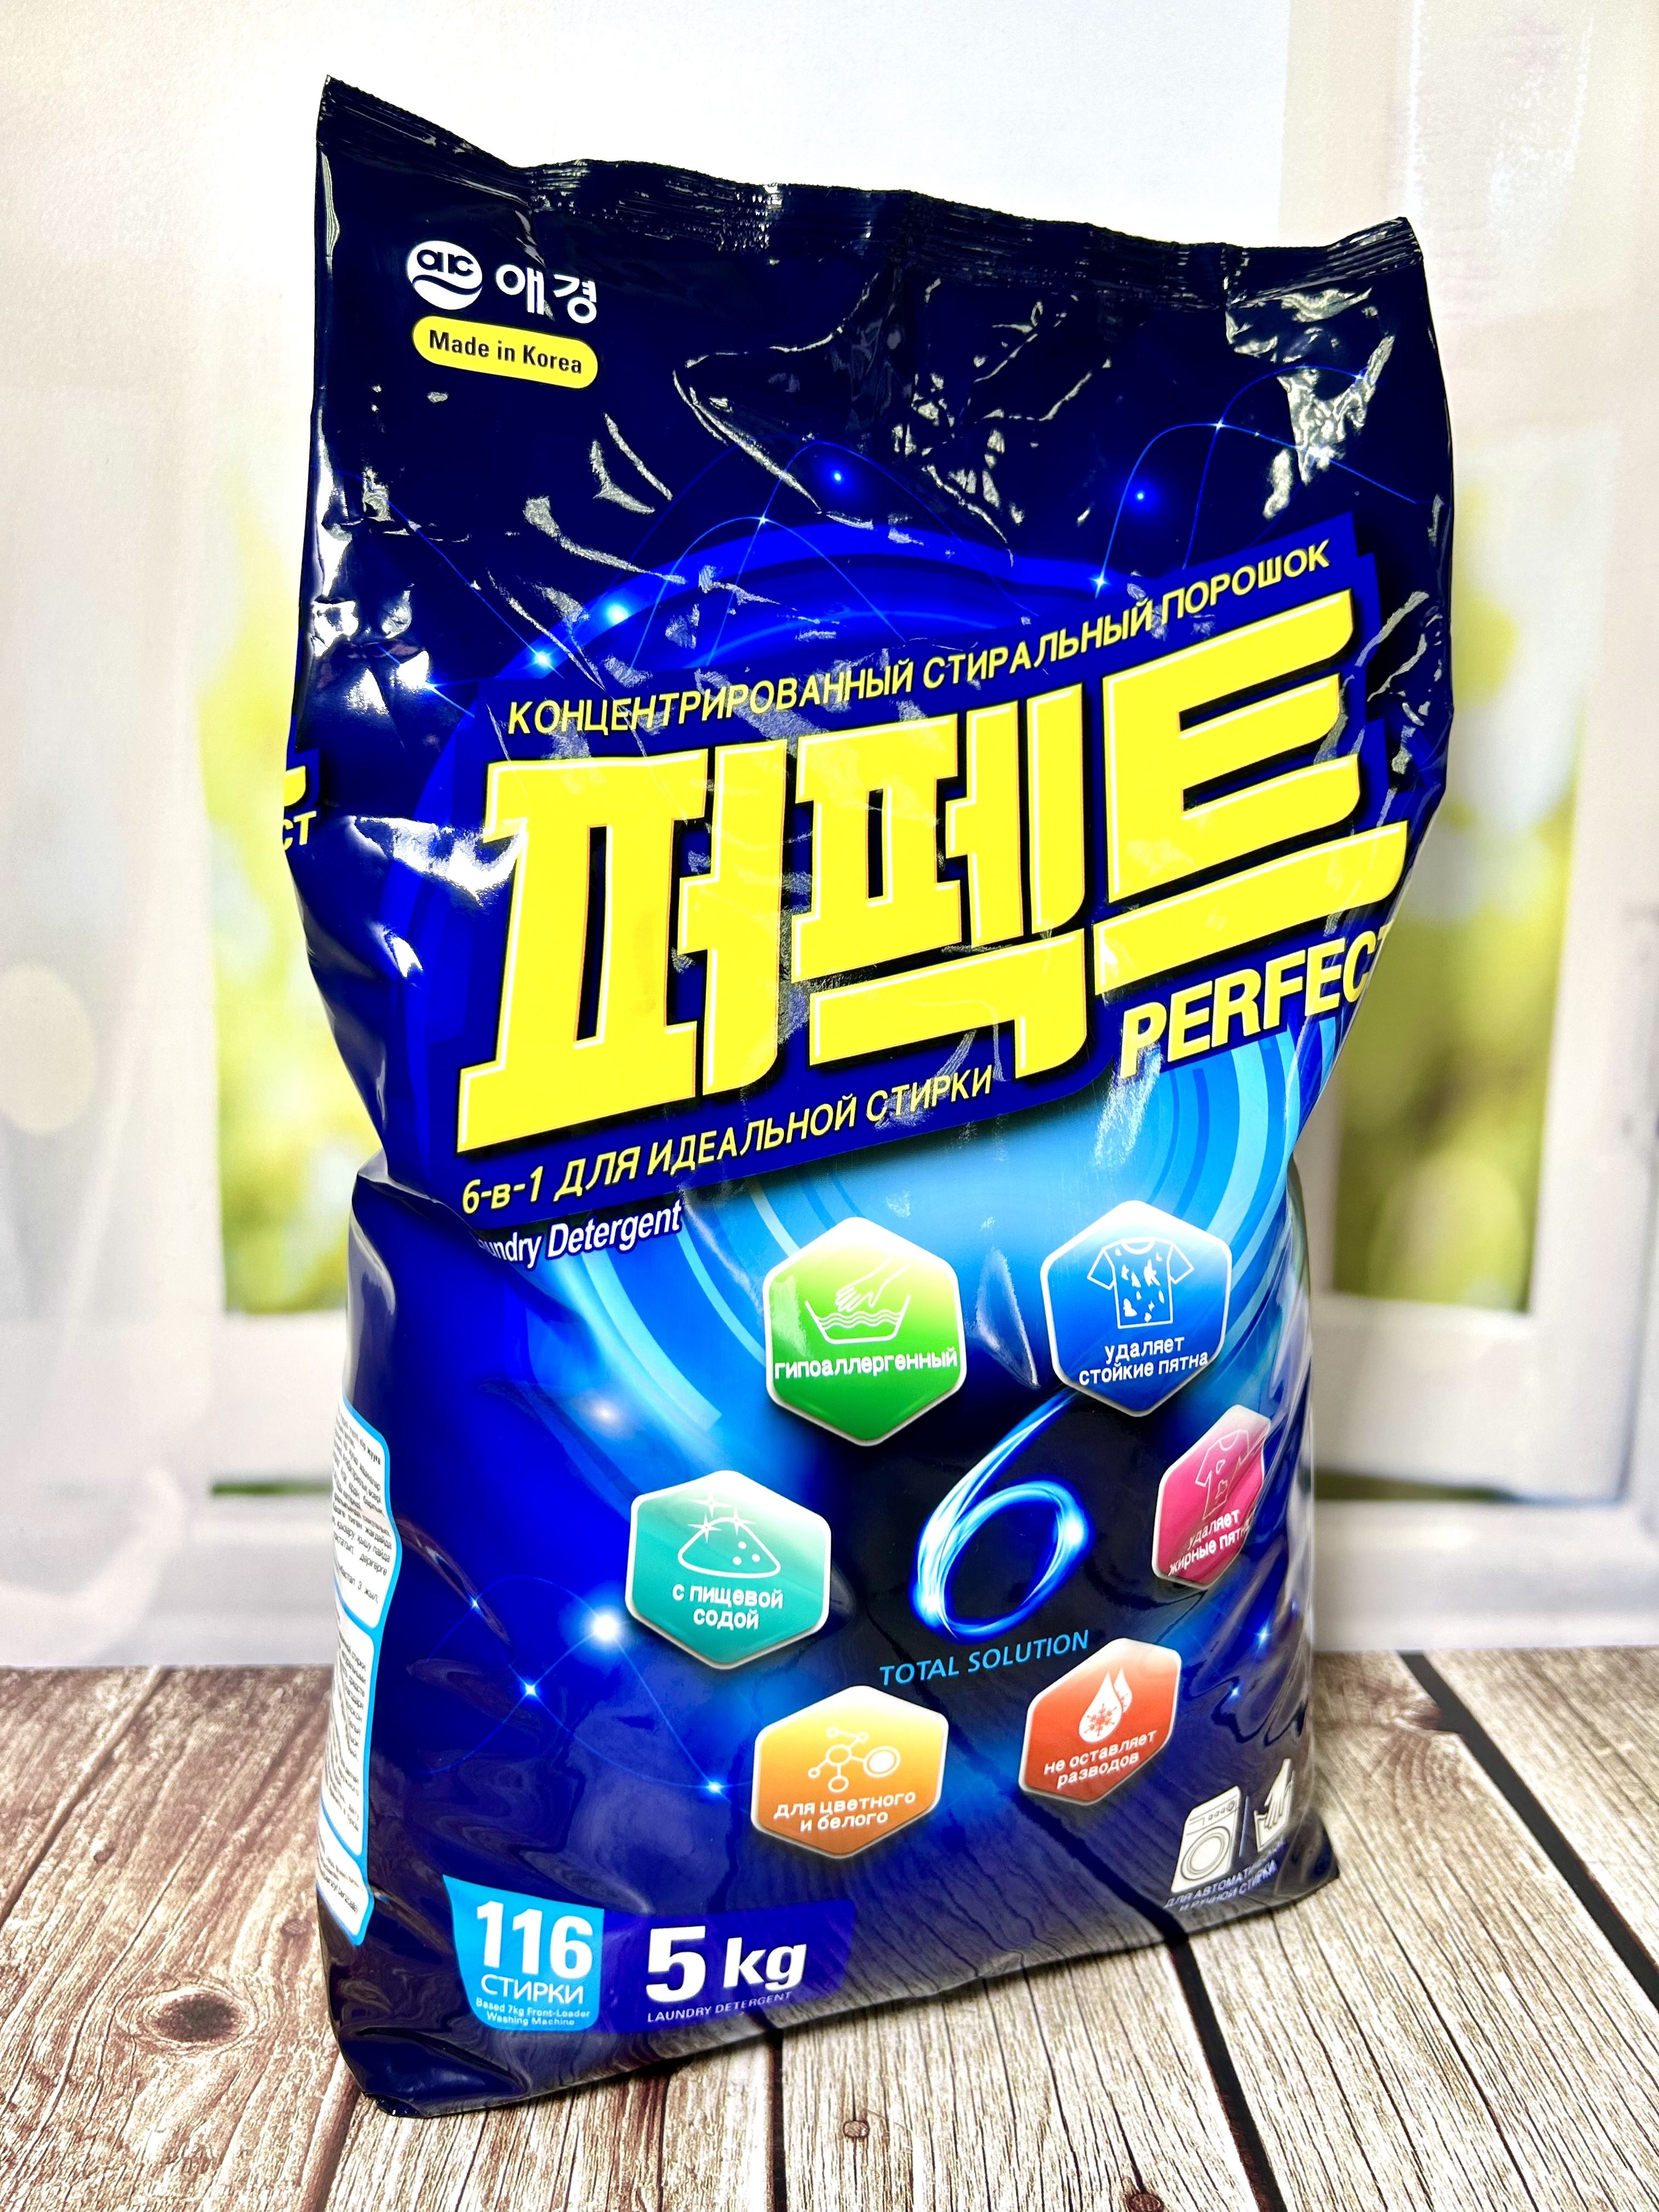 Aekyung Perfect 6 Solution Концентрированный стиральный порошок универсальный 5 кг на 116 стирок в мягкой упаковке